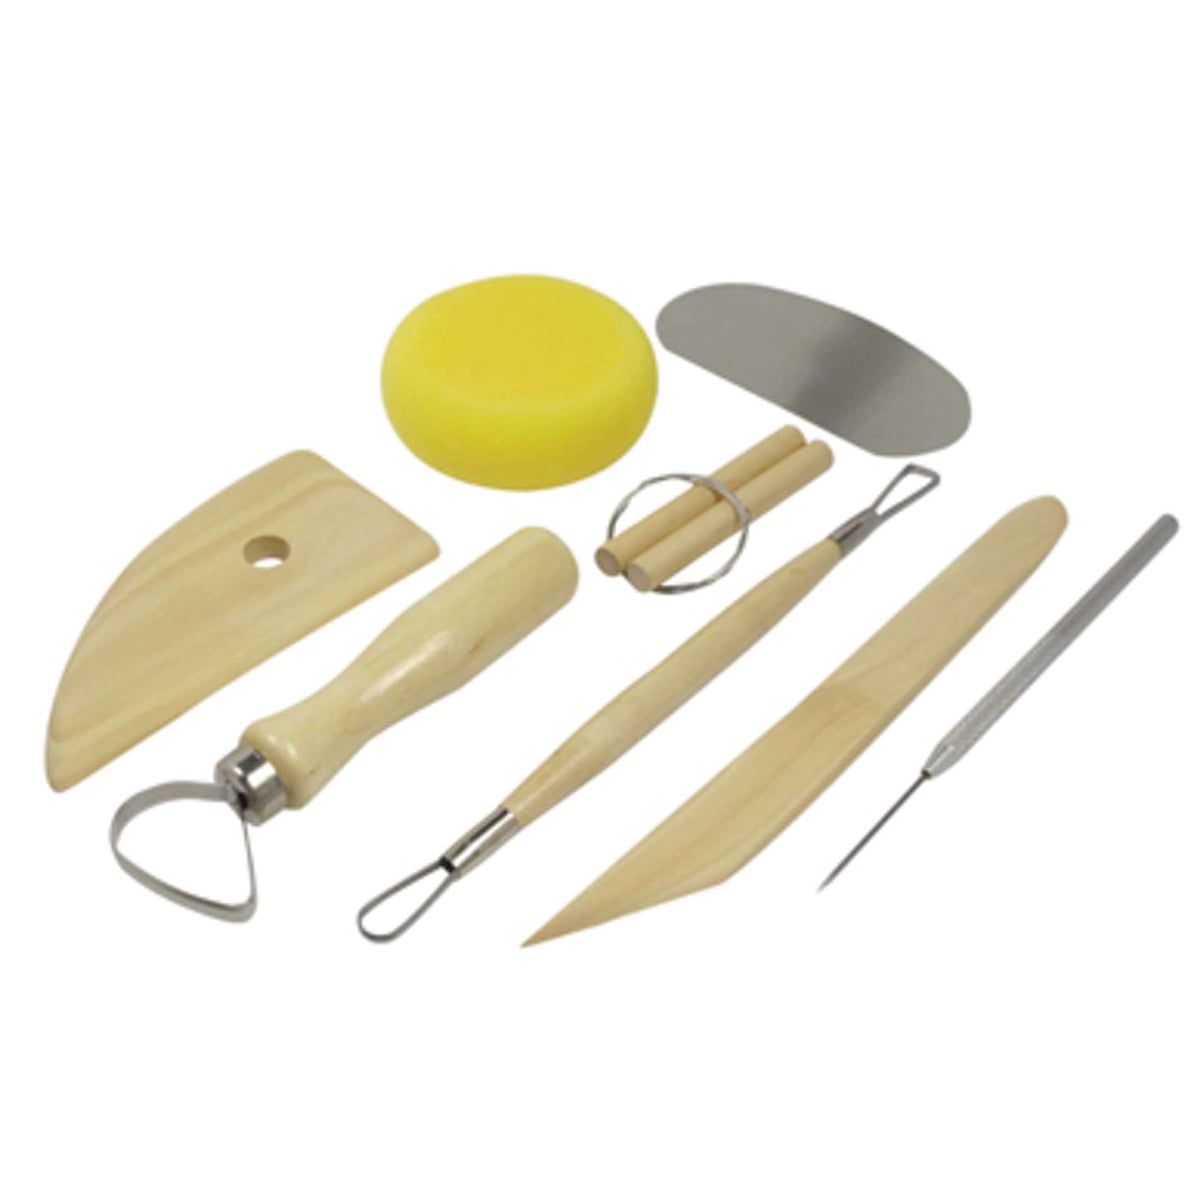  Kemper Pottery Tool Kit Set Of 7 (PTK) (78931)